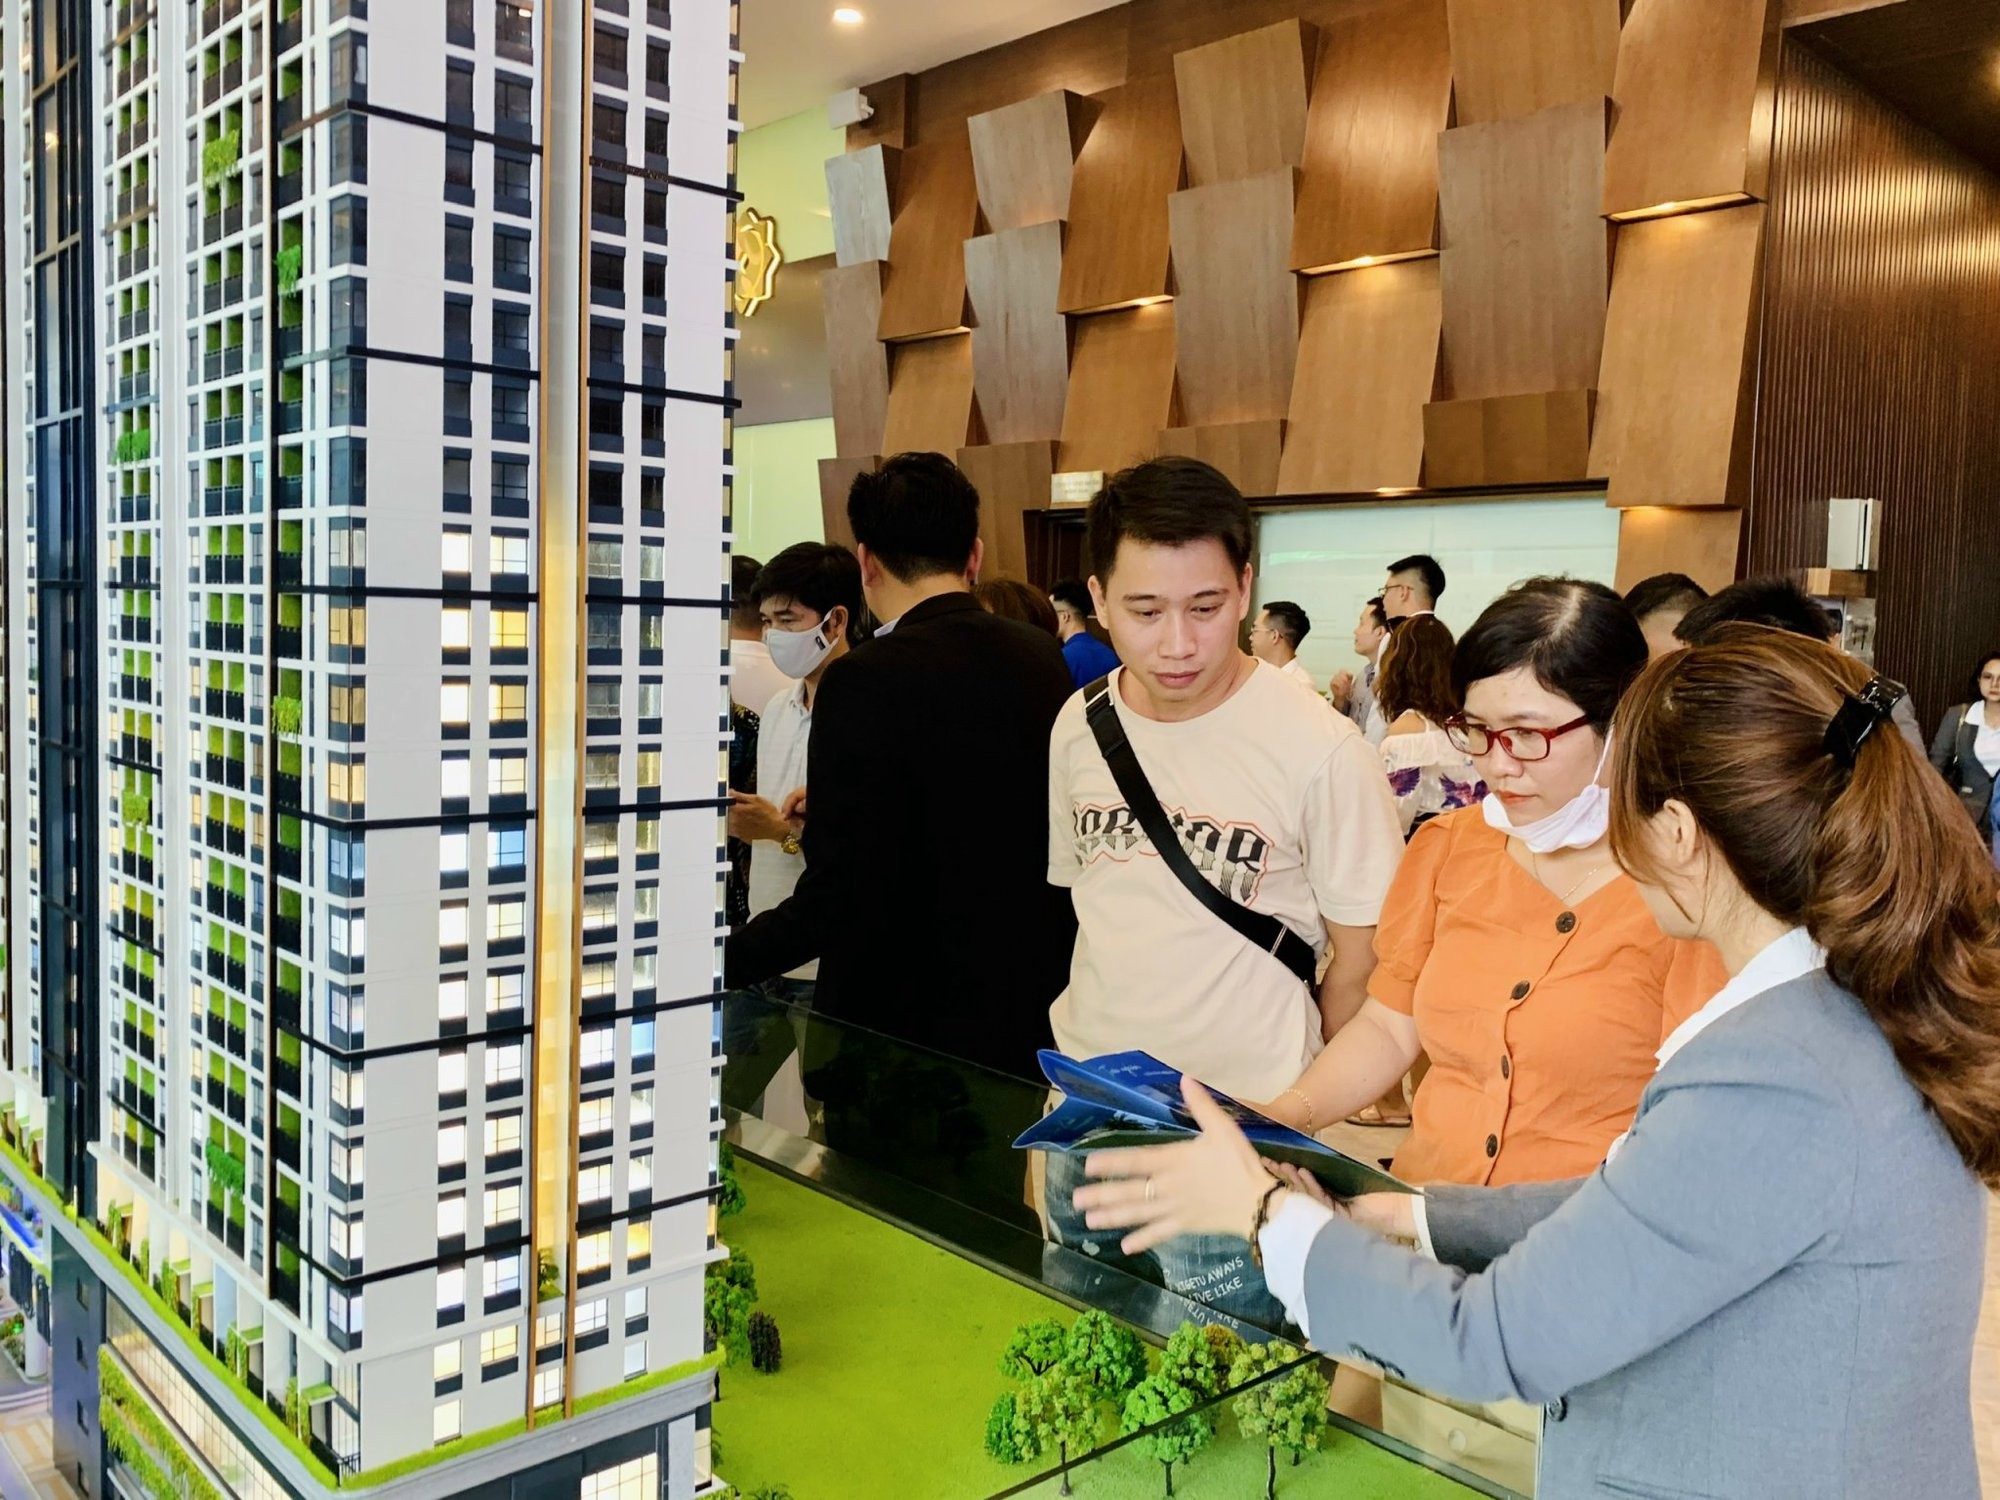 
Theo Hội Môi giới bất động sản Việt Nam (VARS), trong thời gian qua, Chính phủ, các bộ, ngành đã thể hiện được quyết tâm của mình trong việc gỡ vướng cũng như thúc đẩy thị trường bất động sản phát triển một cách an toàn, lành mạnh và bền vững
